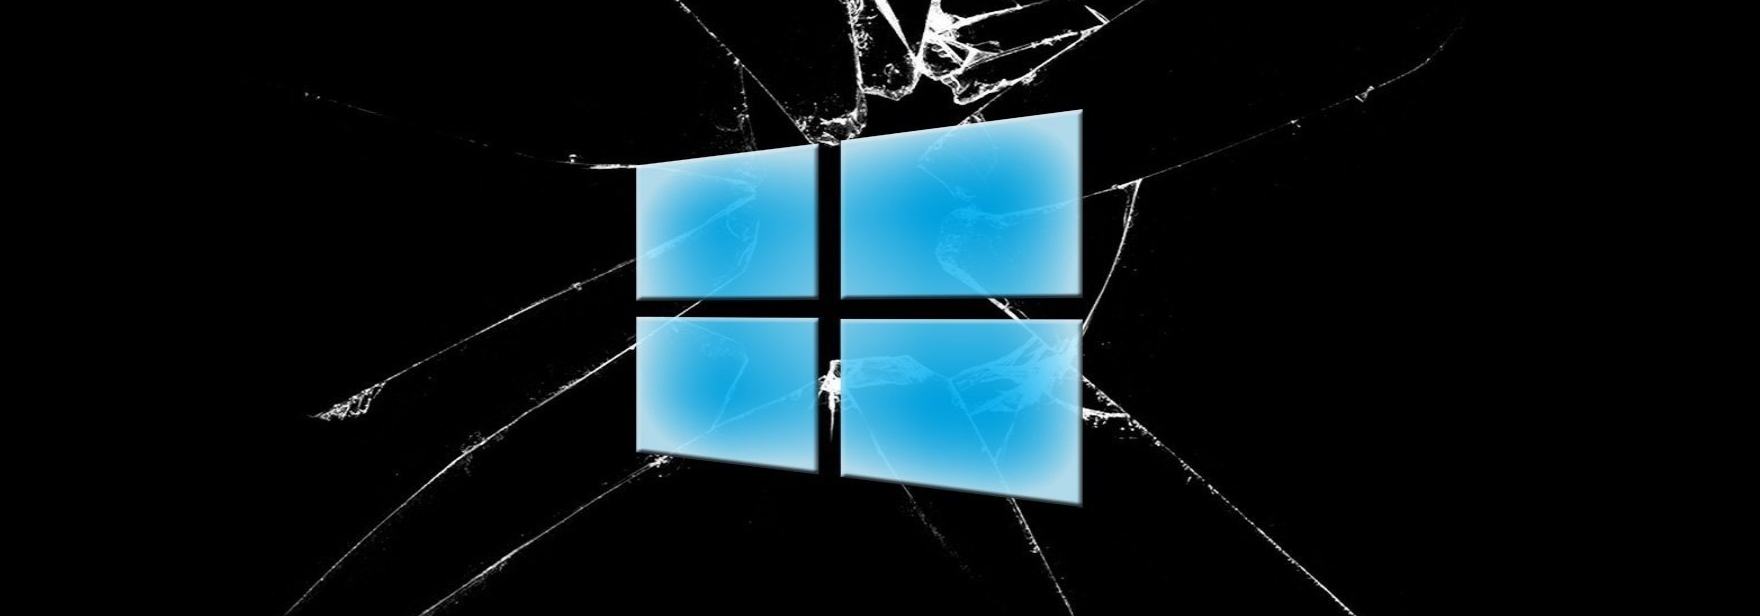 Новая уязвимость в Windows позволяет злоумышленникам получить права администратора. Рекомендации Microsoft